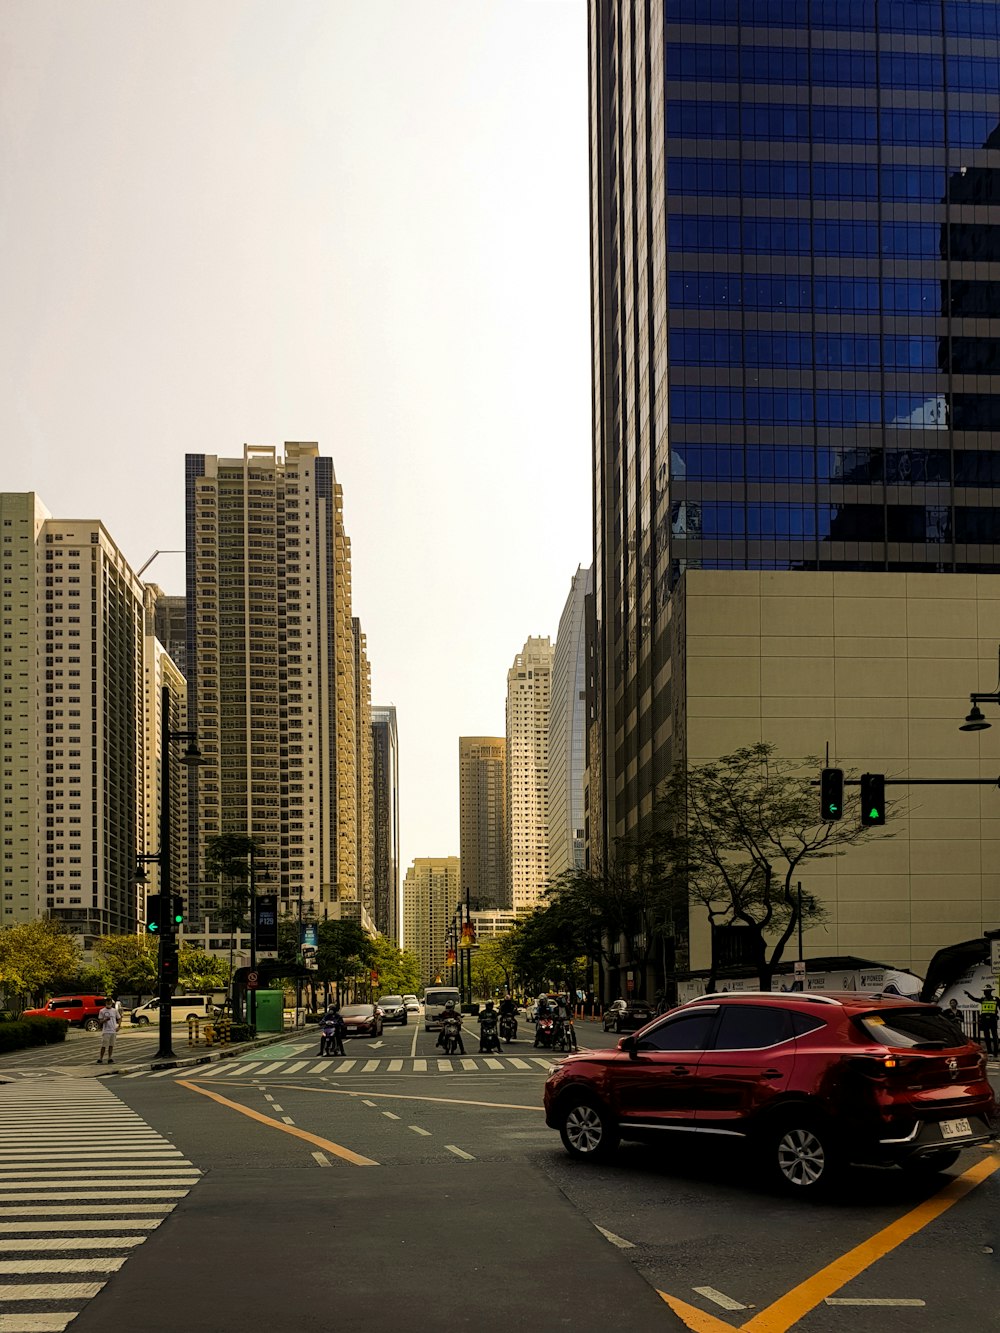 Une voiture rouge roulant dans une rue à côté de grands immeubles